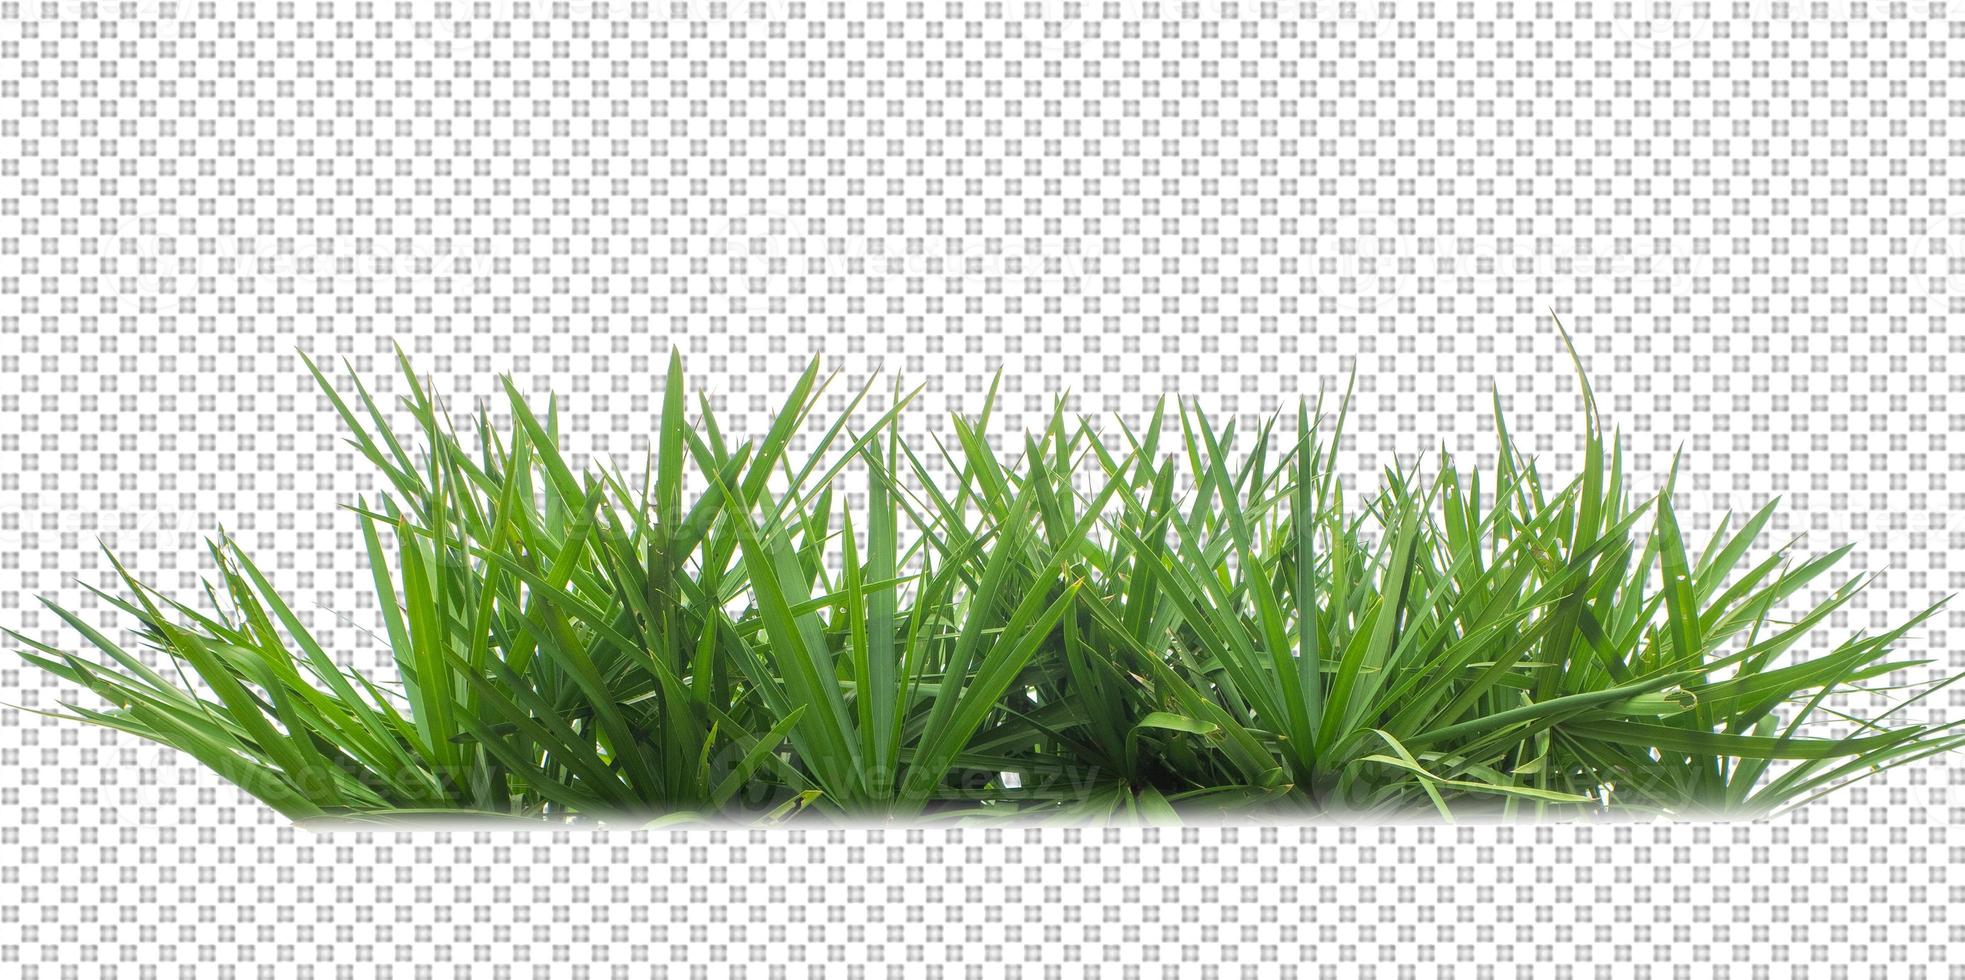 hierba sobre un fondo transparente foto